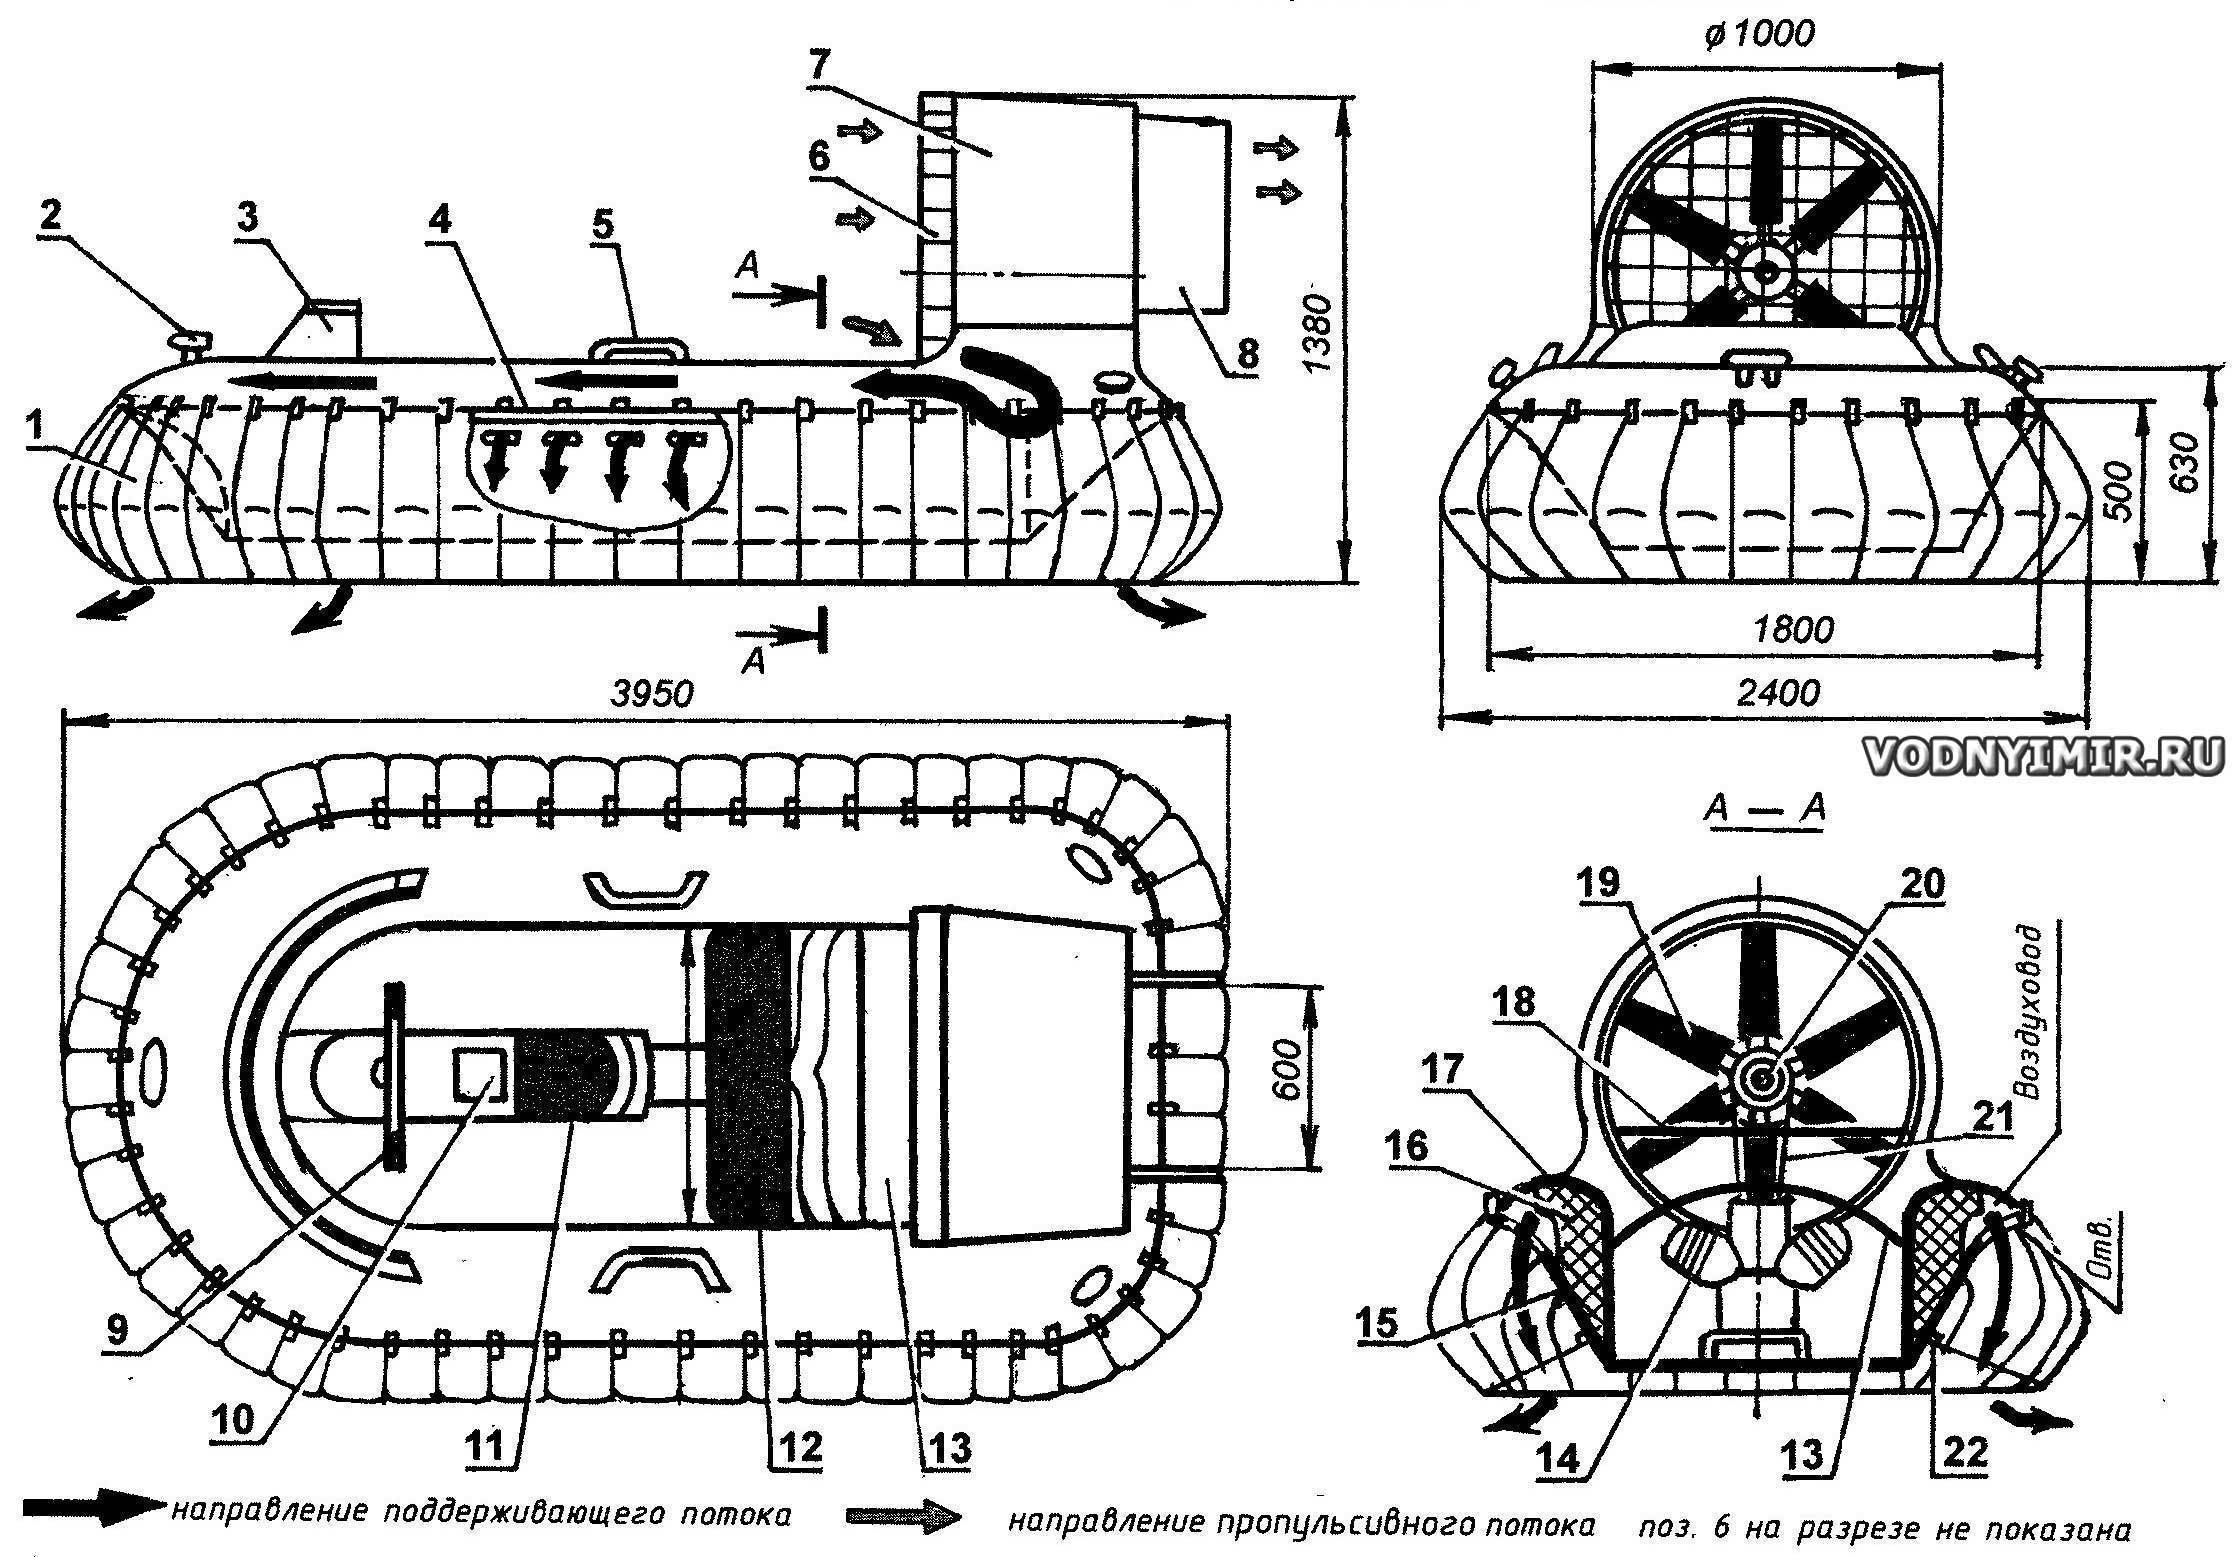 Самодельный ховеркрафт: создание судна на воздушной подушке своими руками, модели-вездеходы и лодки-аэросани